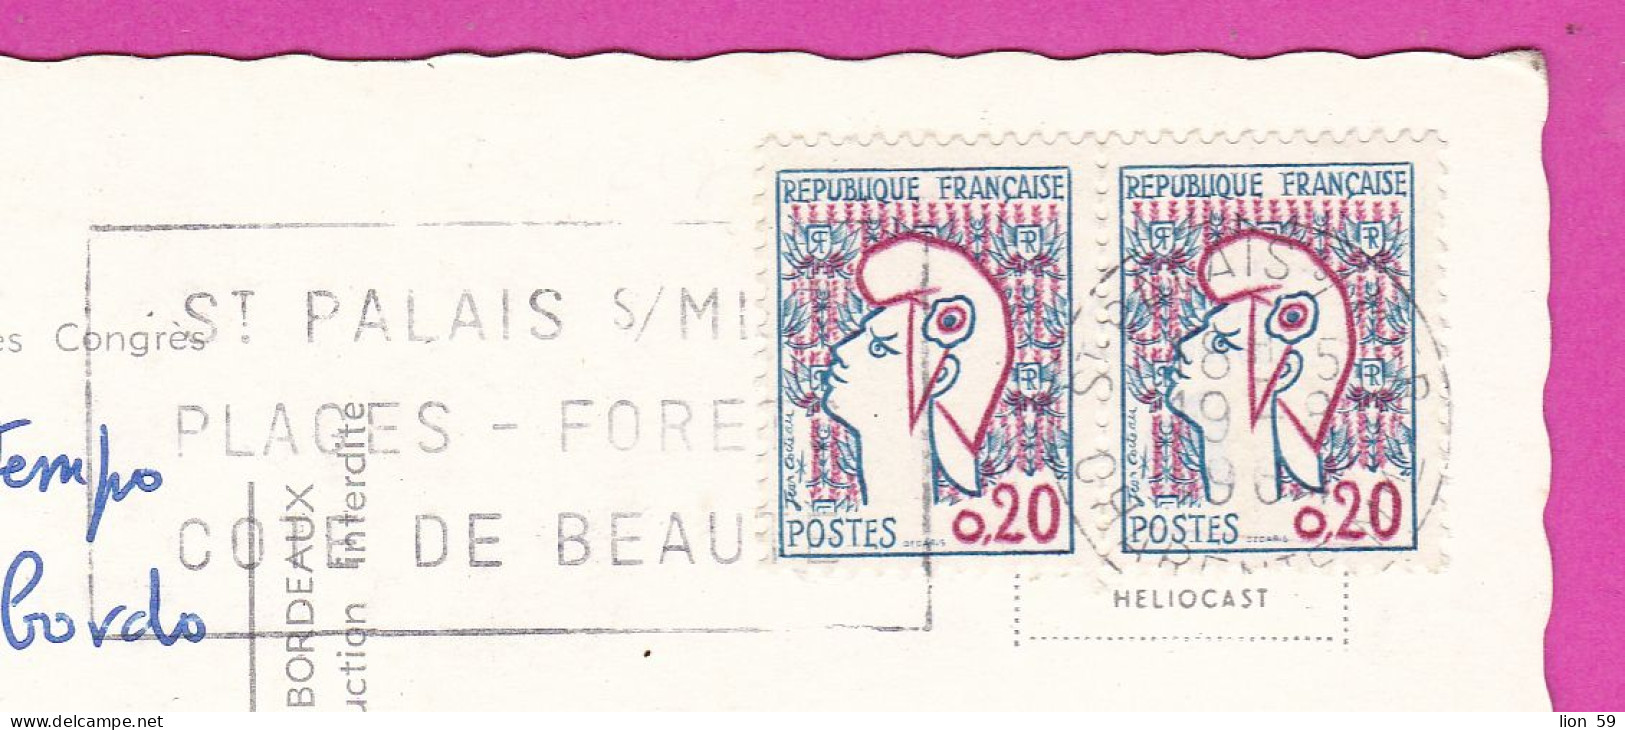 294106 / France - ROYAN Palais Des Congres PC 1968 USED 0.20+0.20 Fr. Marianne De Cocteau Flamme ST PALAIS S/MER PLAGES - Briefe U. Dokumente